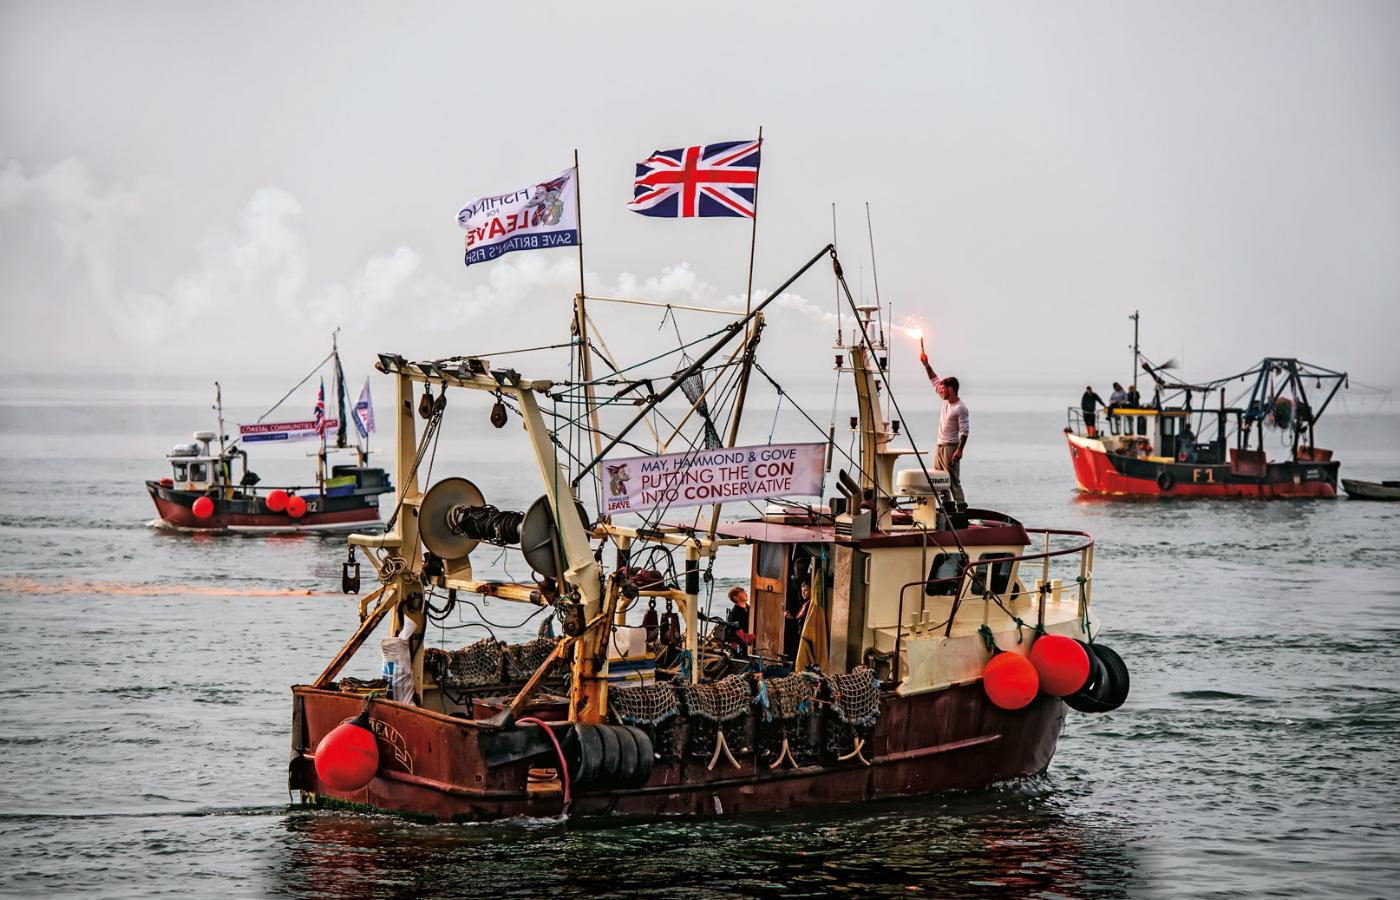 Grupa brytyjskich rybaków domaga się rezygnacji z okresu przejściowego i tzw. twardego brexitu bez umowy.